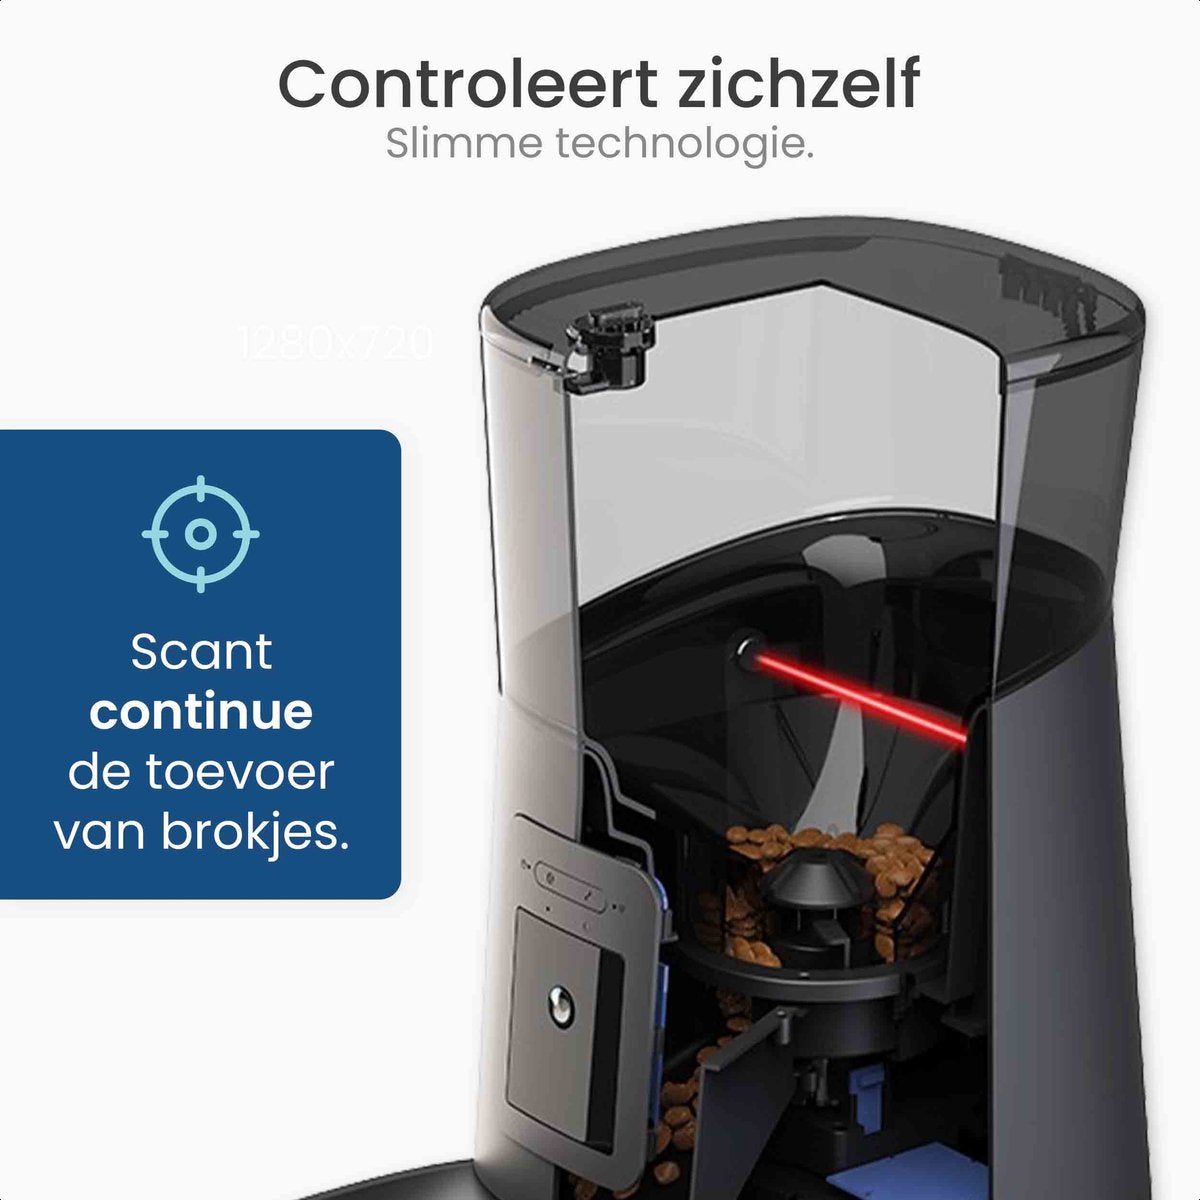 Gologi Automatische voerbak kat - Voerbak - Voerautomaat voor honden & katten - Voerdispenser - Met Full HD camera - Met app - Zwart